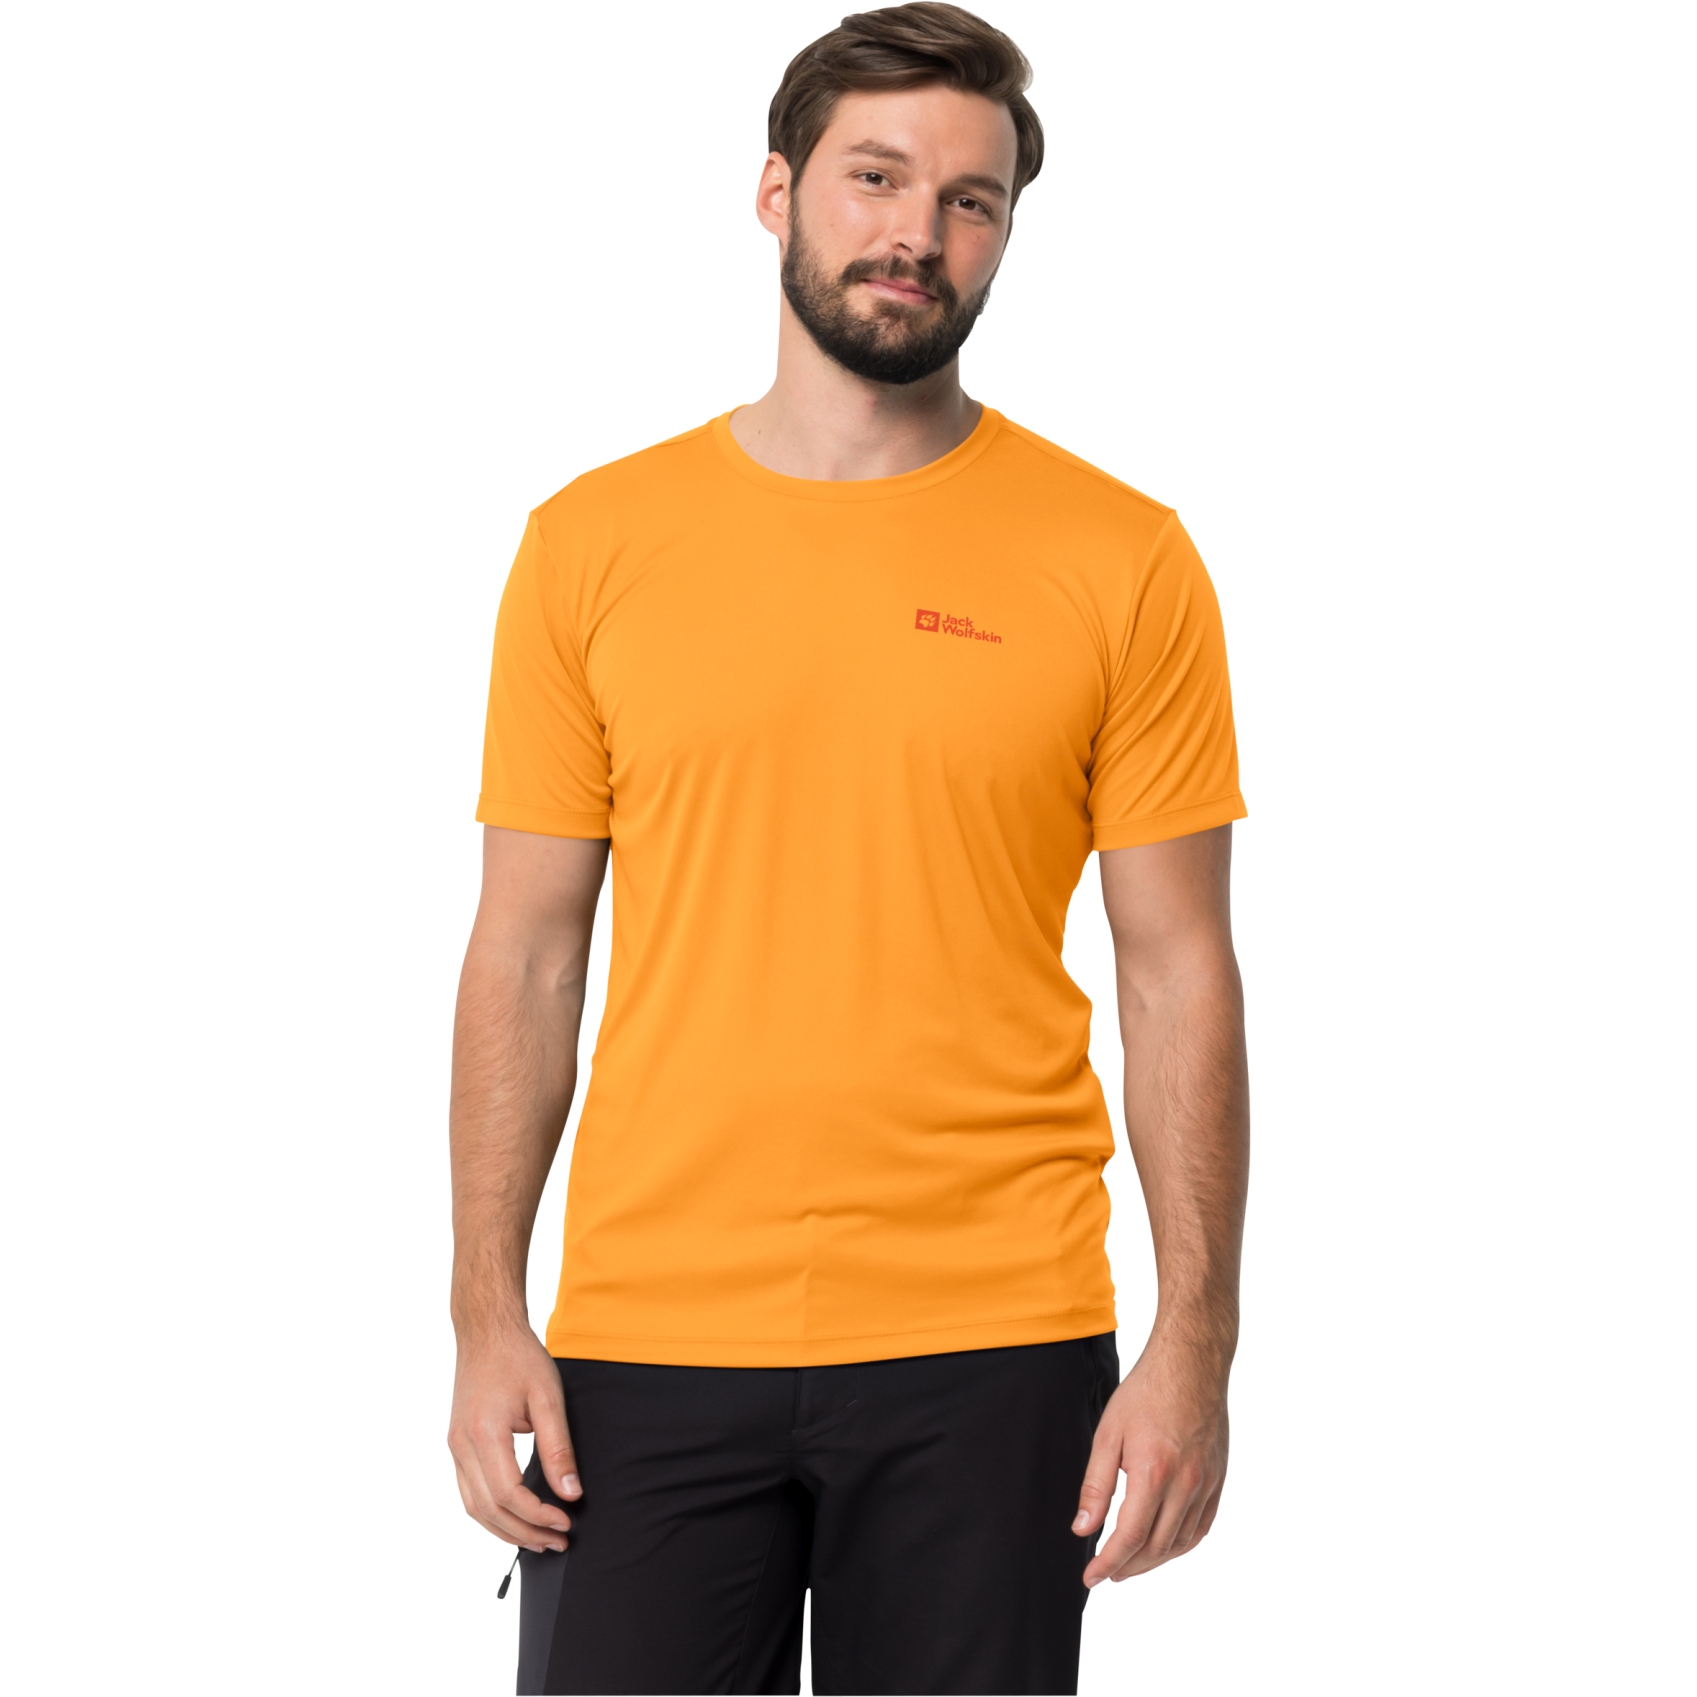 Produktbild von Jack Wolfskin Tech T-Shirt Herren - orange pop